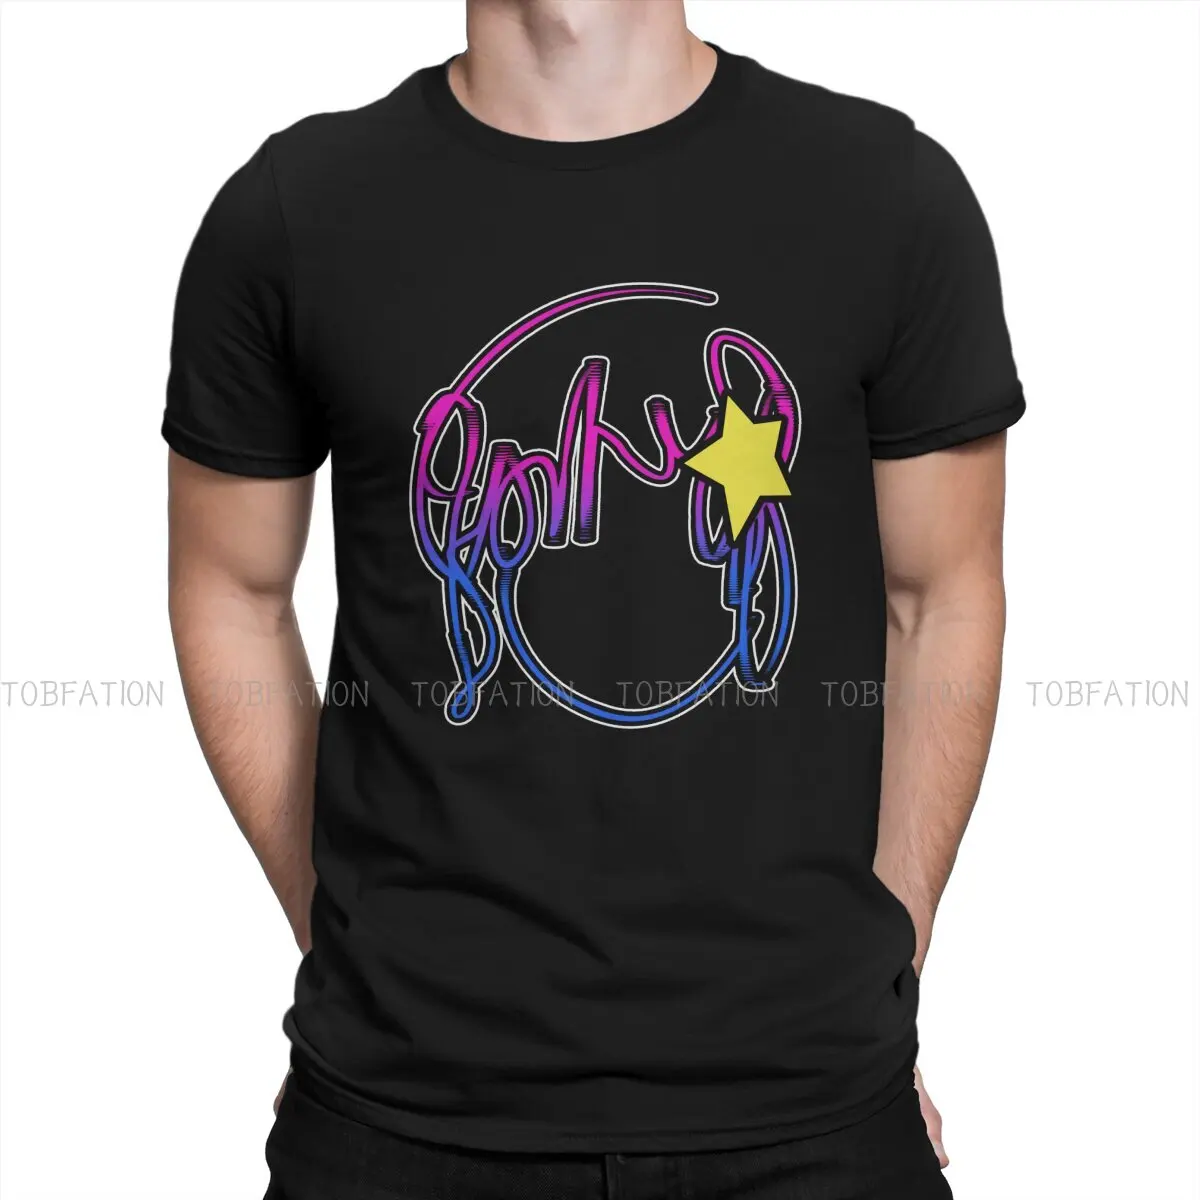 Уникальная футболка Stars Scott Pilgrim vs. the World Love Story Удобная подарочная одежда нового дизайна, футболки, хит продаж - 0